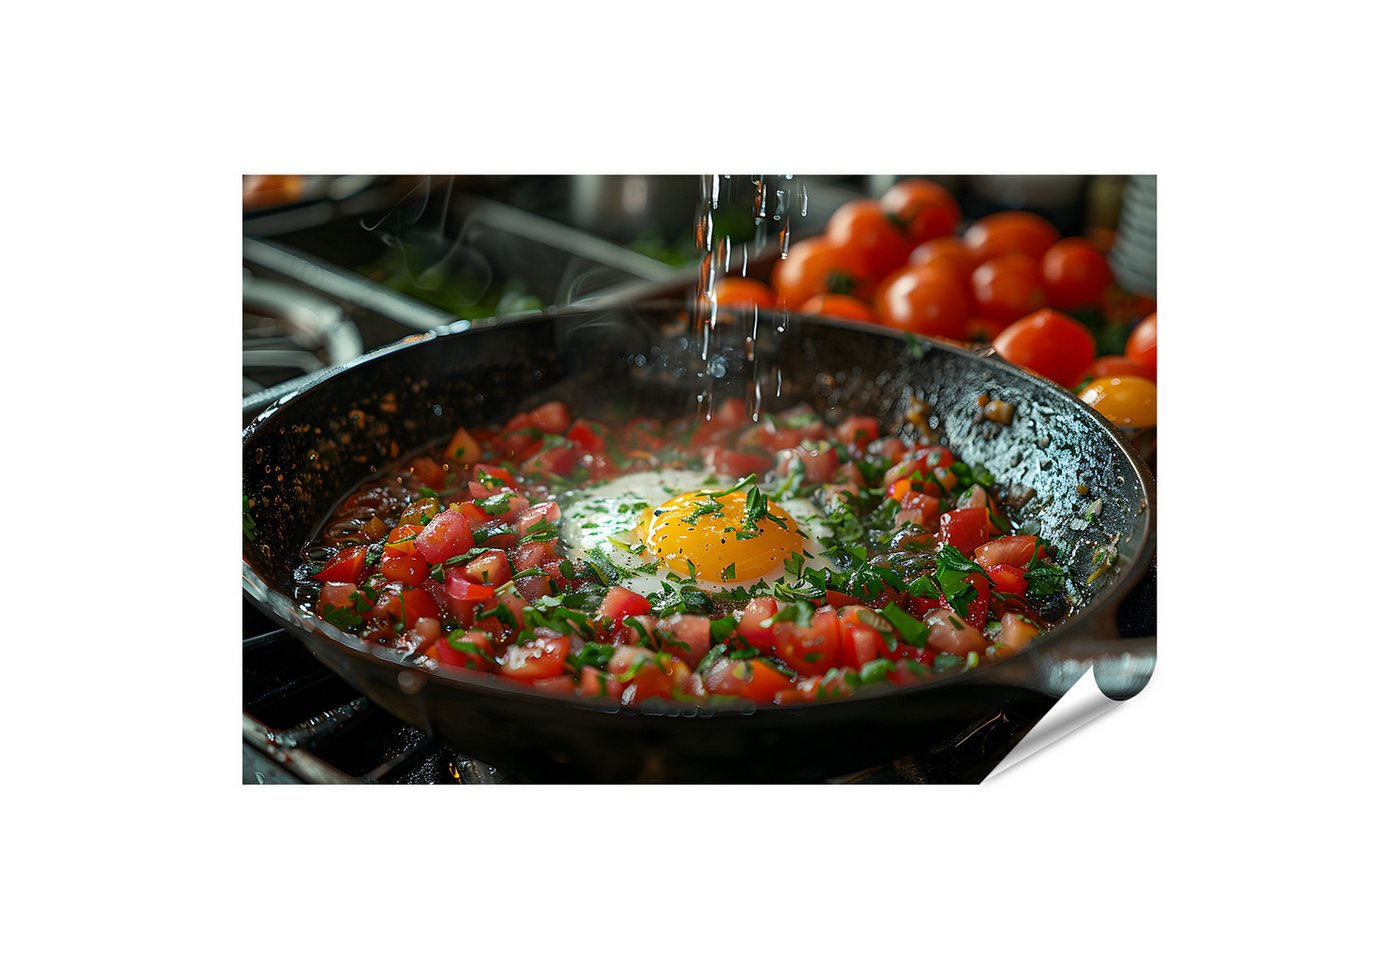 islandburner Poster Perfekt gekochtes Ei und Tomaten, exquisit in siedender Pfanne auf Her von islandburner